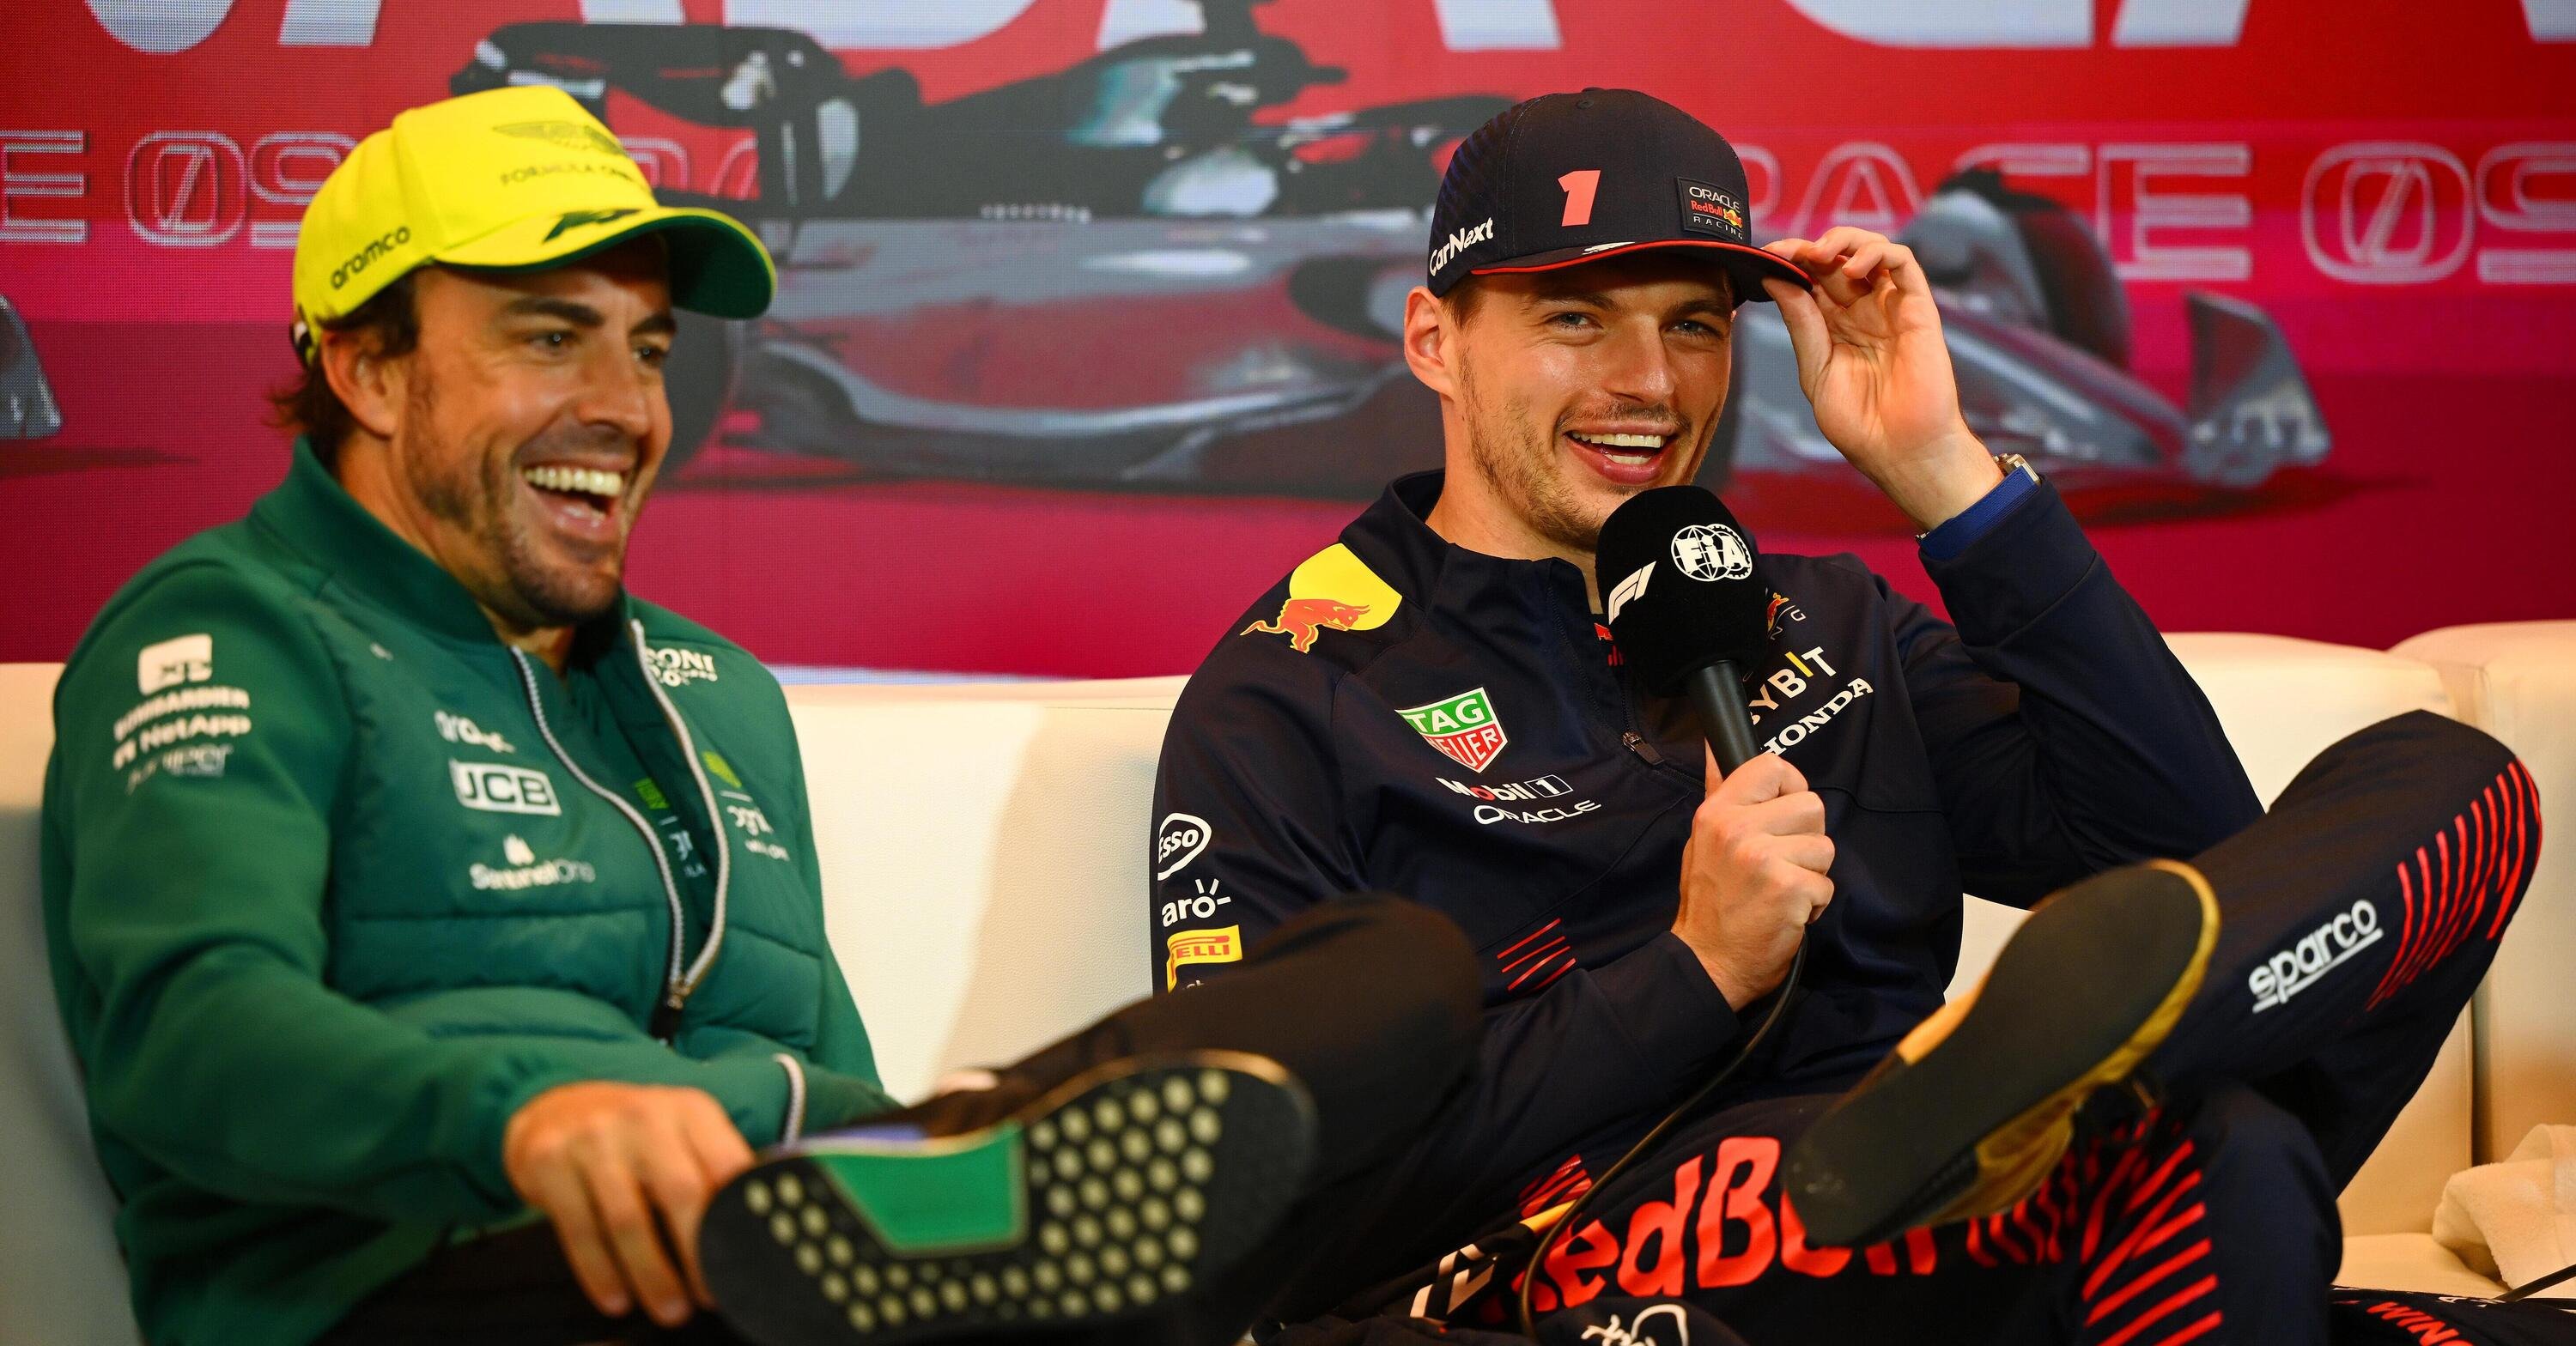 Max Verstappen, Fernando Alonso e Marc Marquez: il team che non ti aspetti per Le Mans 